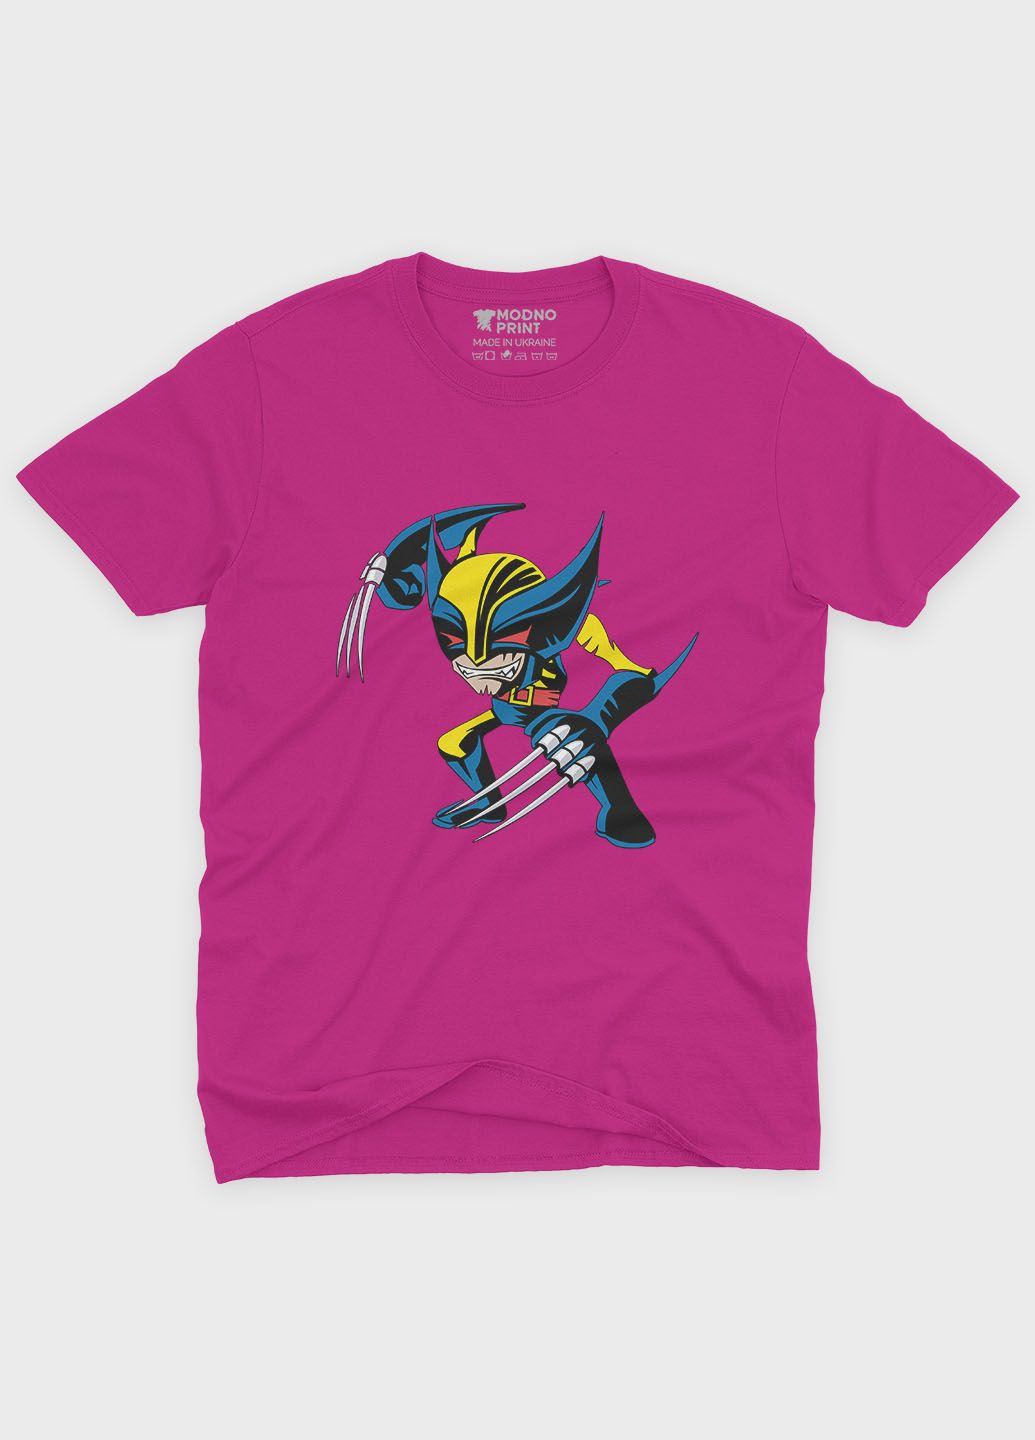 Розовая демисезонная футболка для мальчика с принтом супергероя - росомаха (ts001-1-fuxj-006-021-002-b) Modno